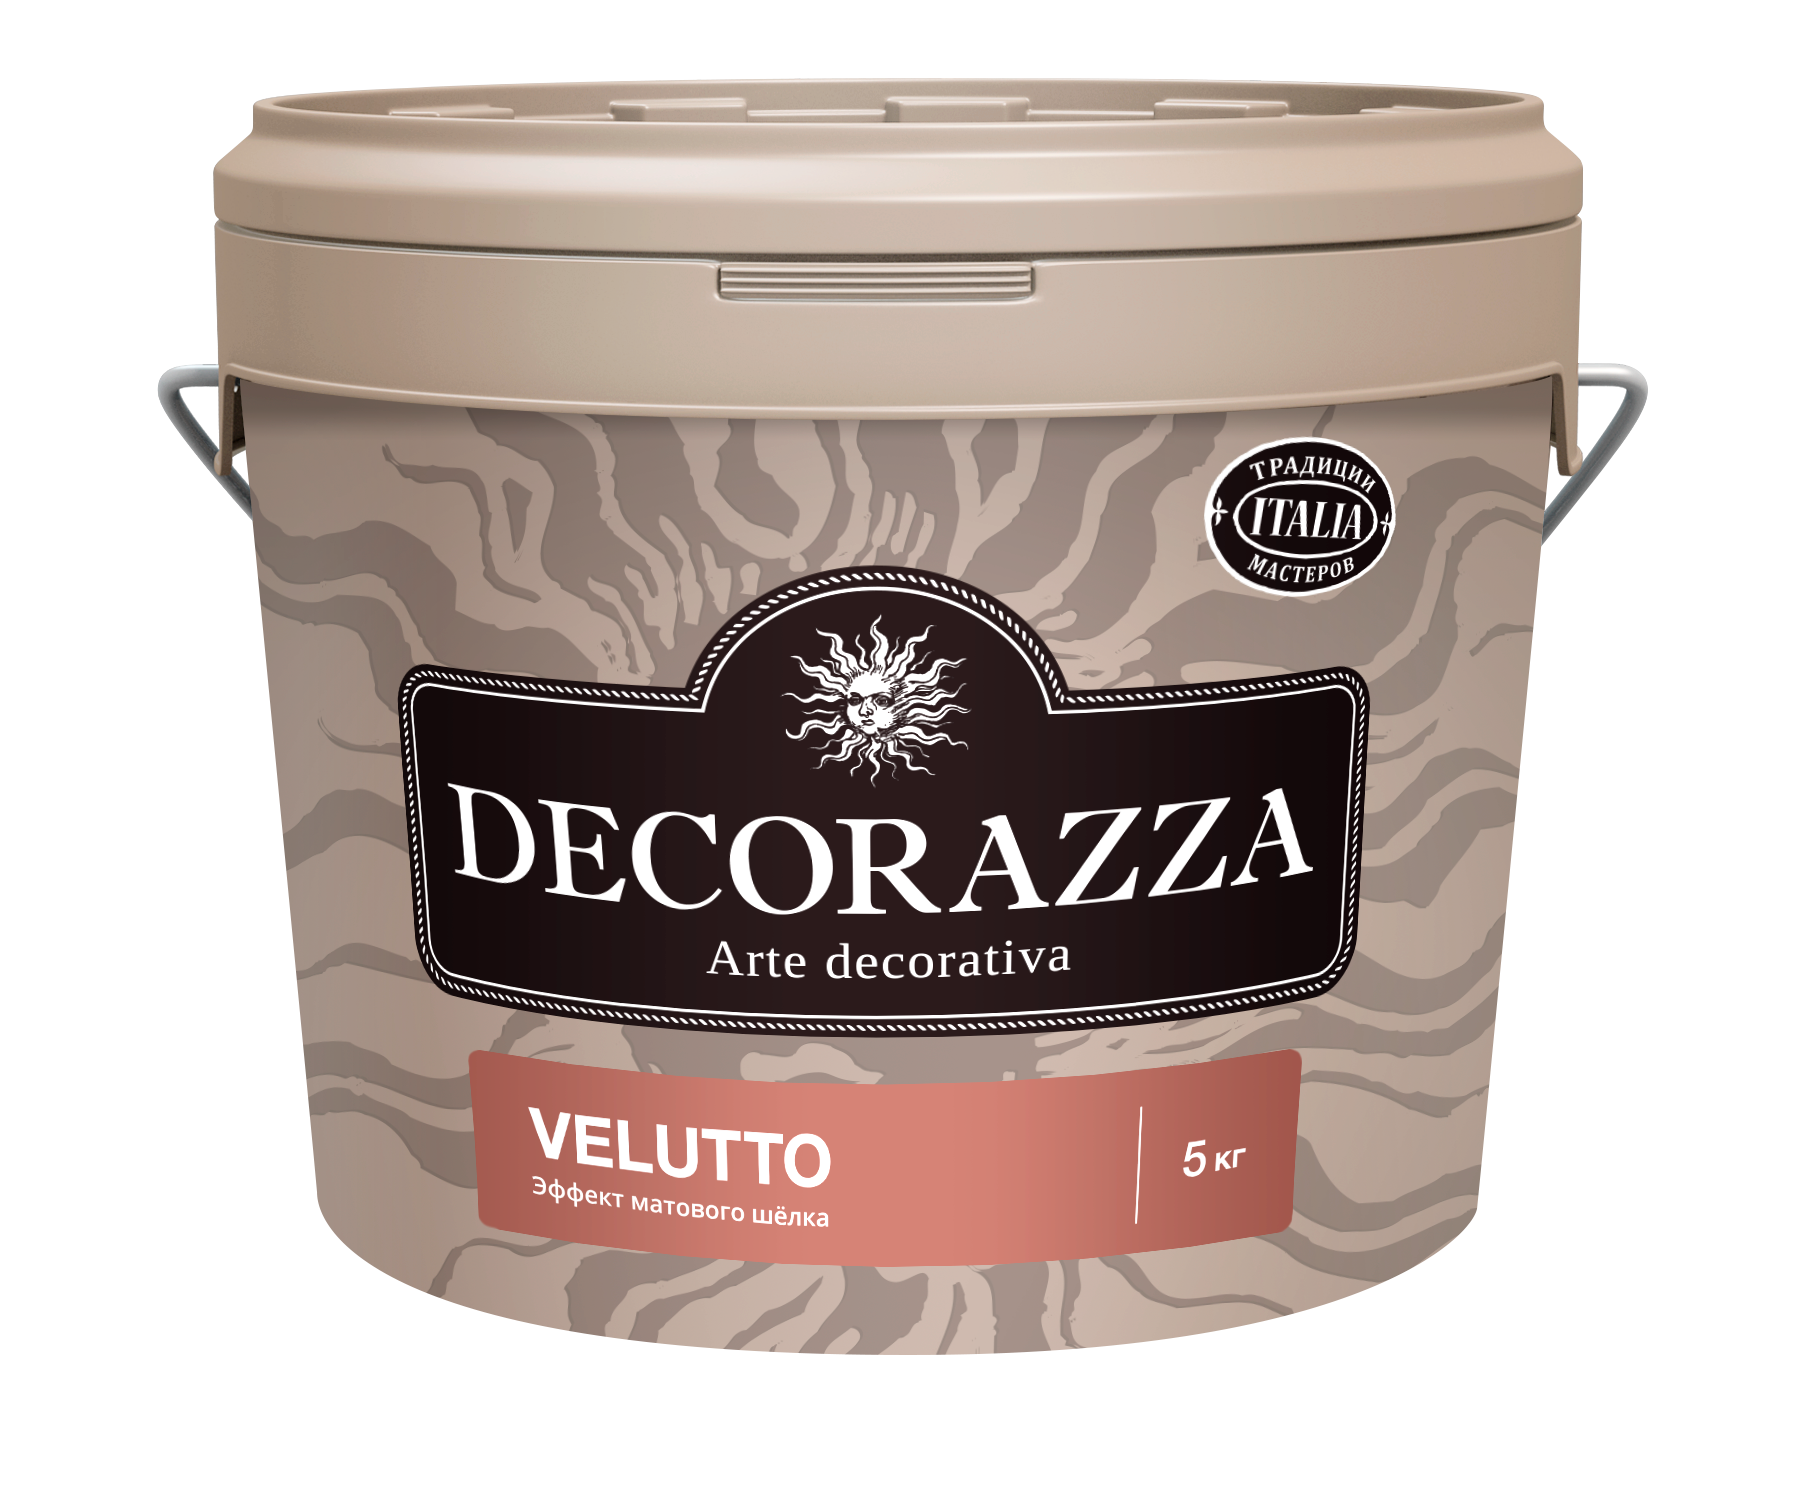 Декоративная штукатурка Decorazza Velluto VT 001, 5 кг декоративный финишный лак decorazza perla vernici pl 1341 золото 1 л